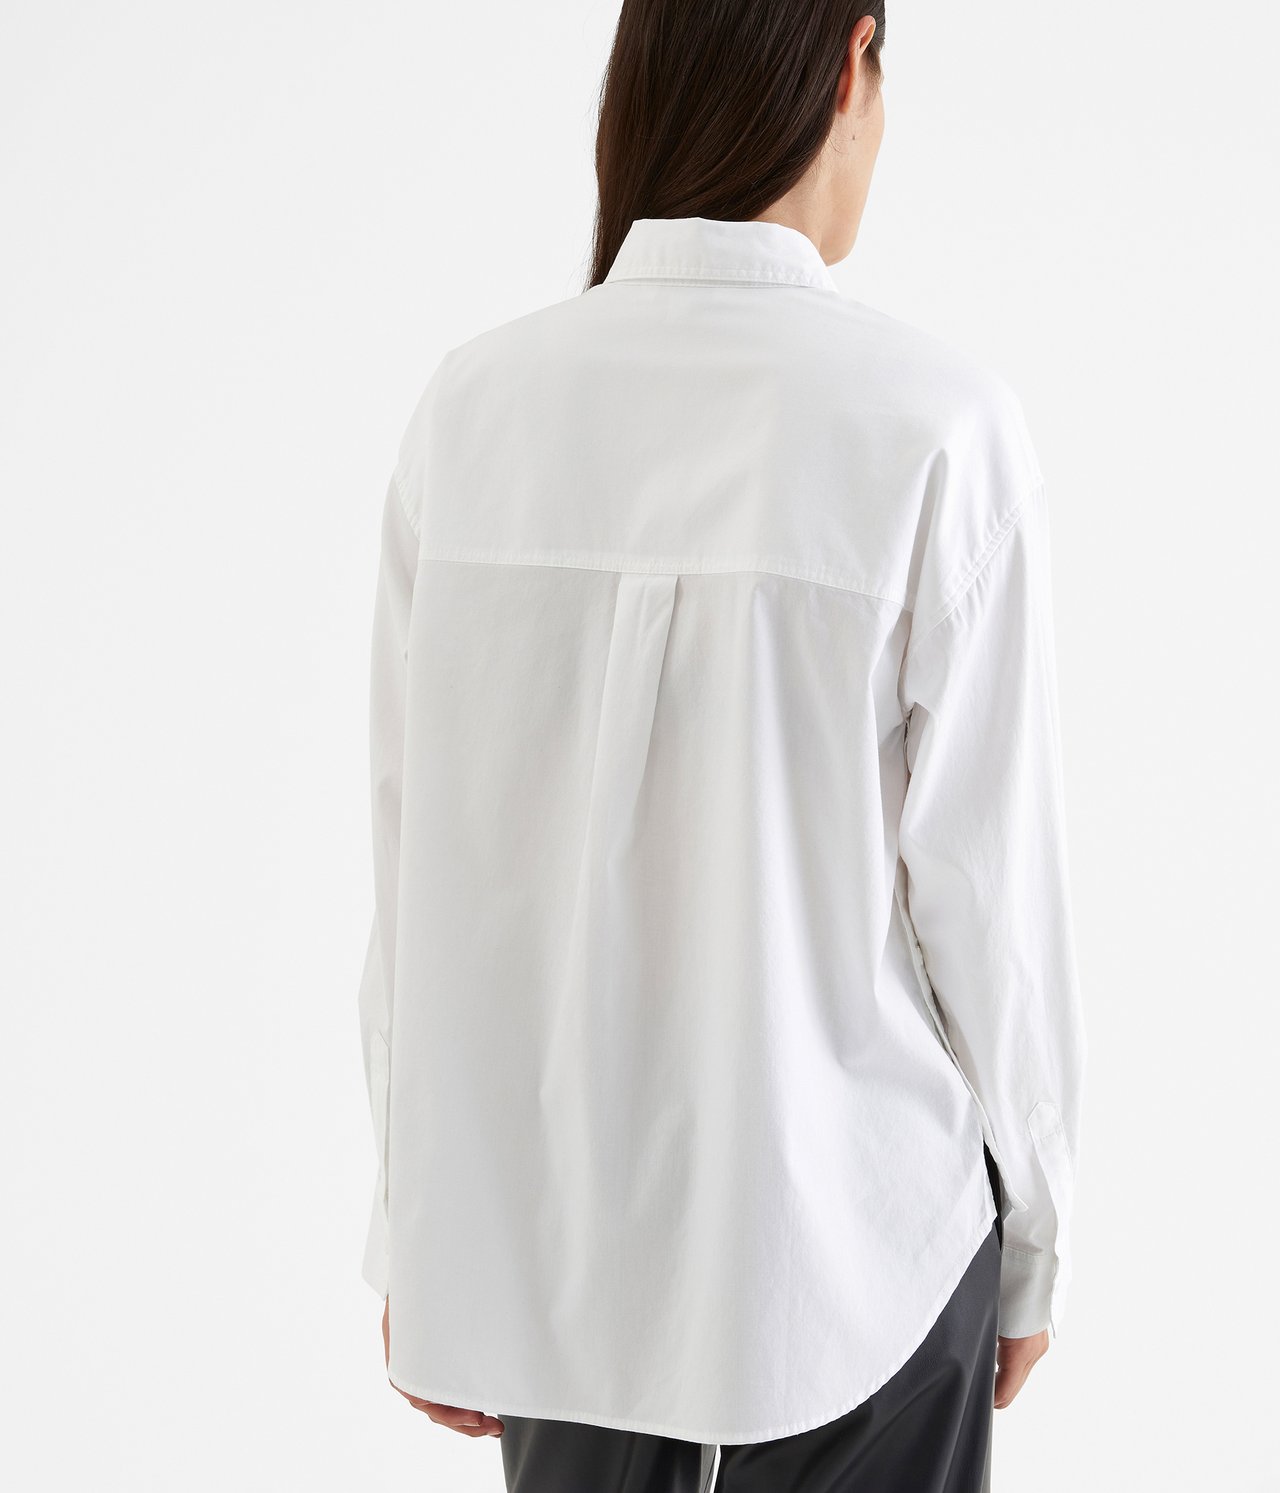 Skjorte med knepping i sidene Hvit - null - 4